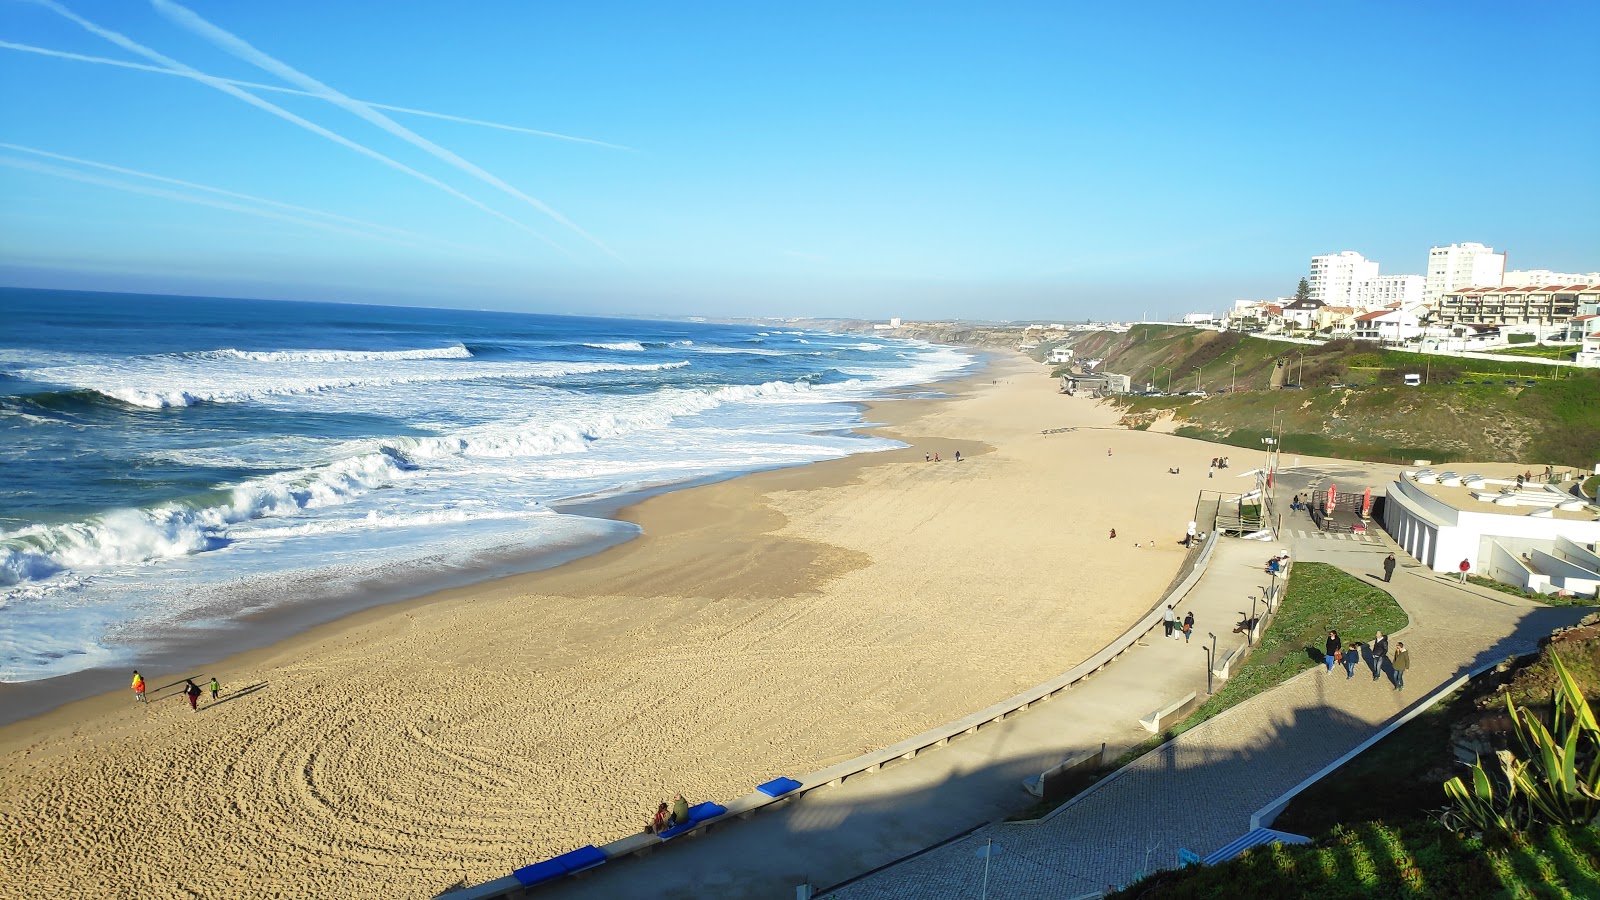 Zdjęcie Praia de Santa Rita - popularne miejsce wśród znawców relaksu